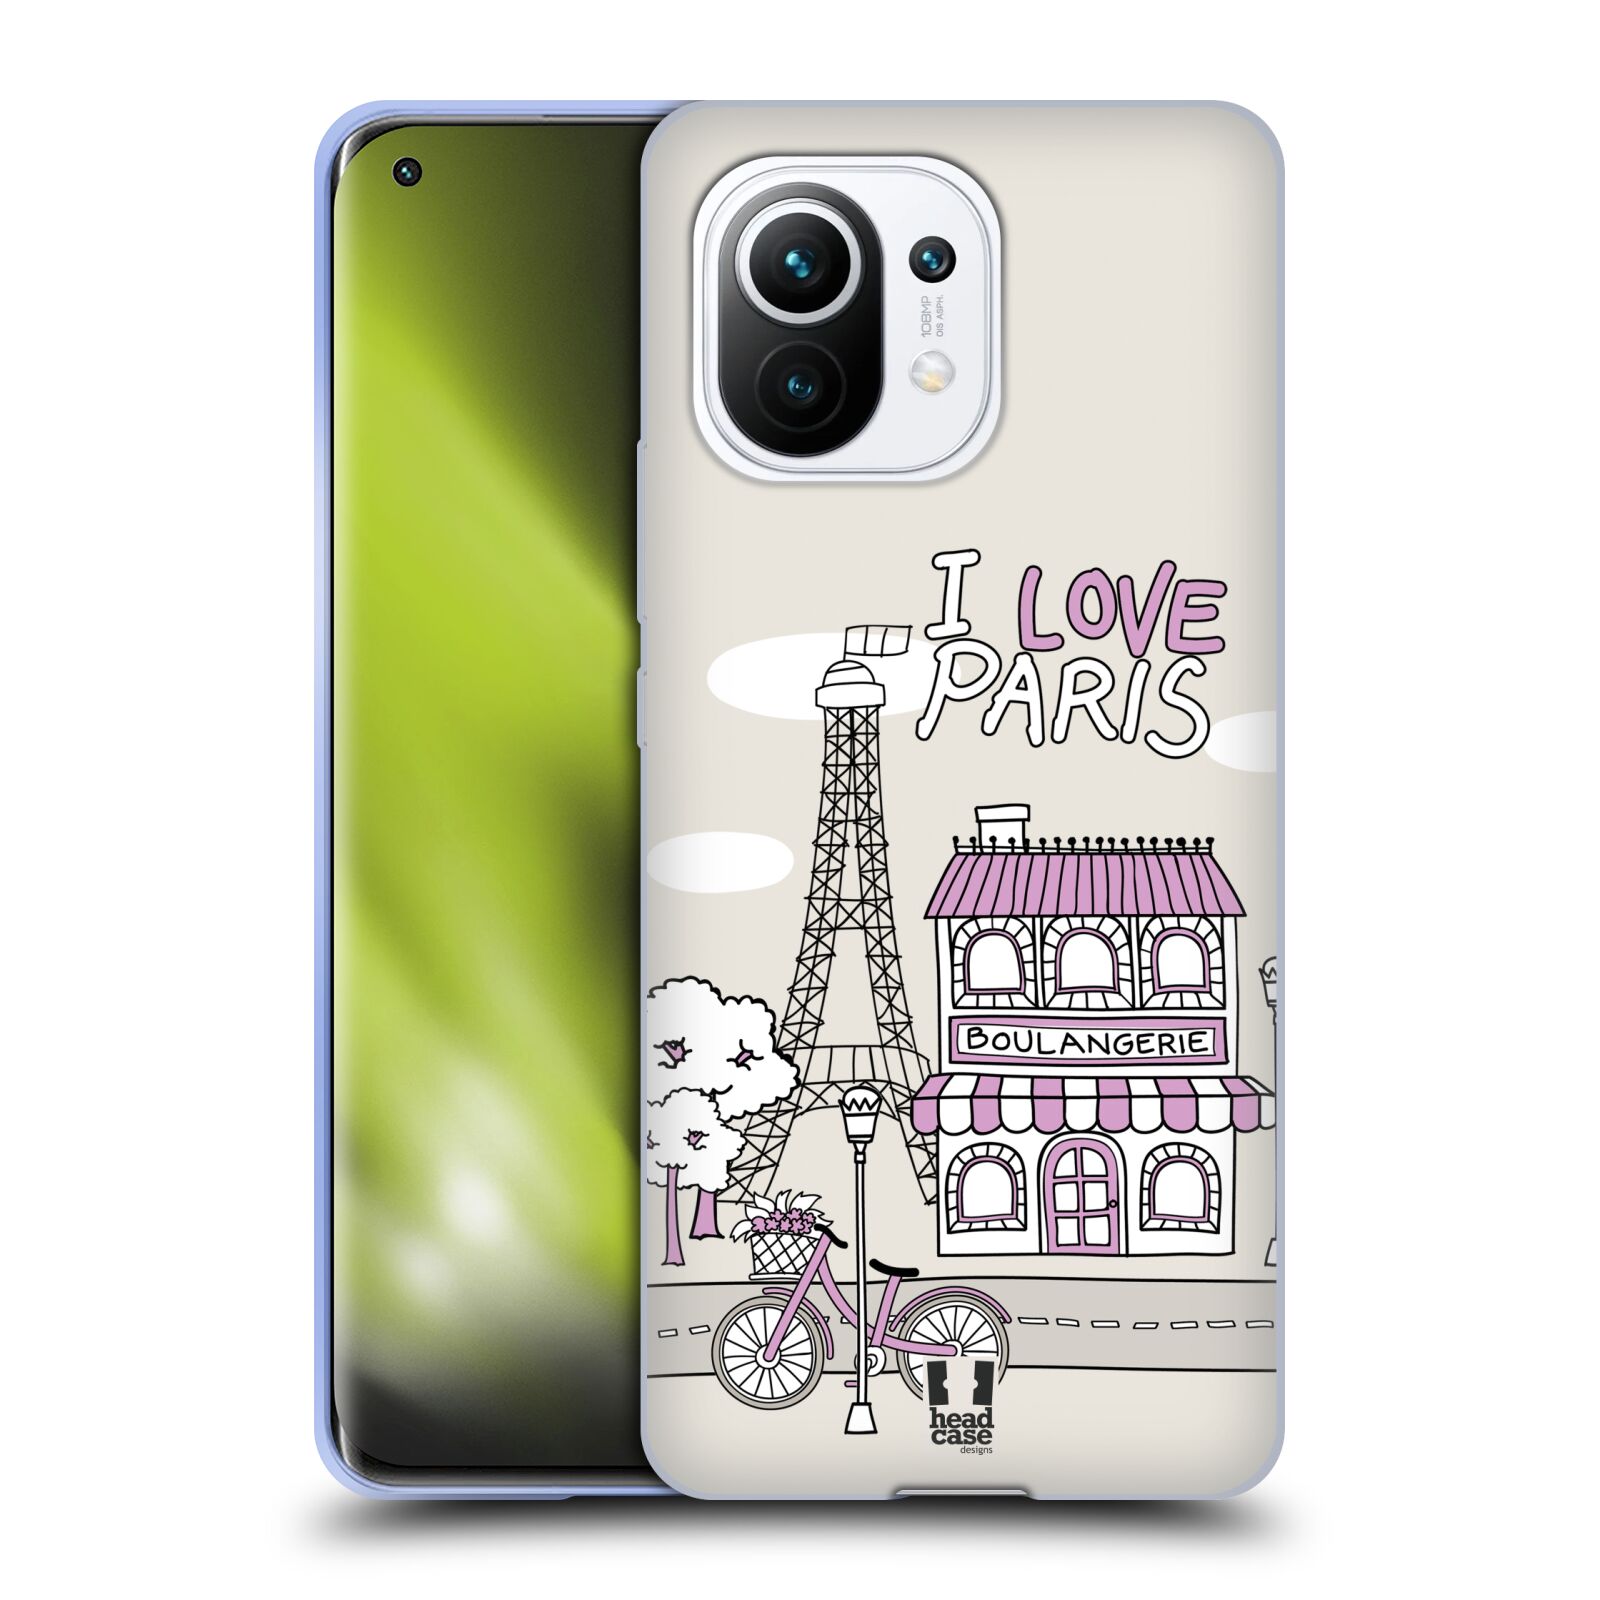 Plastový obal HEAD CASE na mobil Xiaomi Mi 11 vzor Kreslená městečka FIALOVÁ, Paříž, Francie, I LOVE PARIS